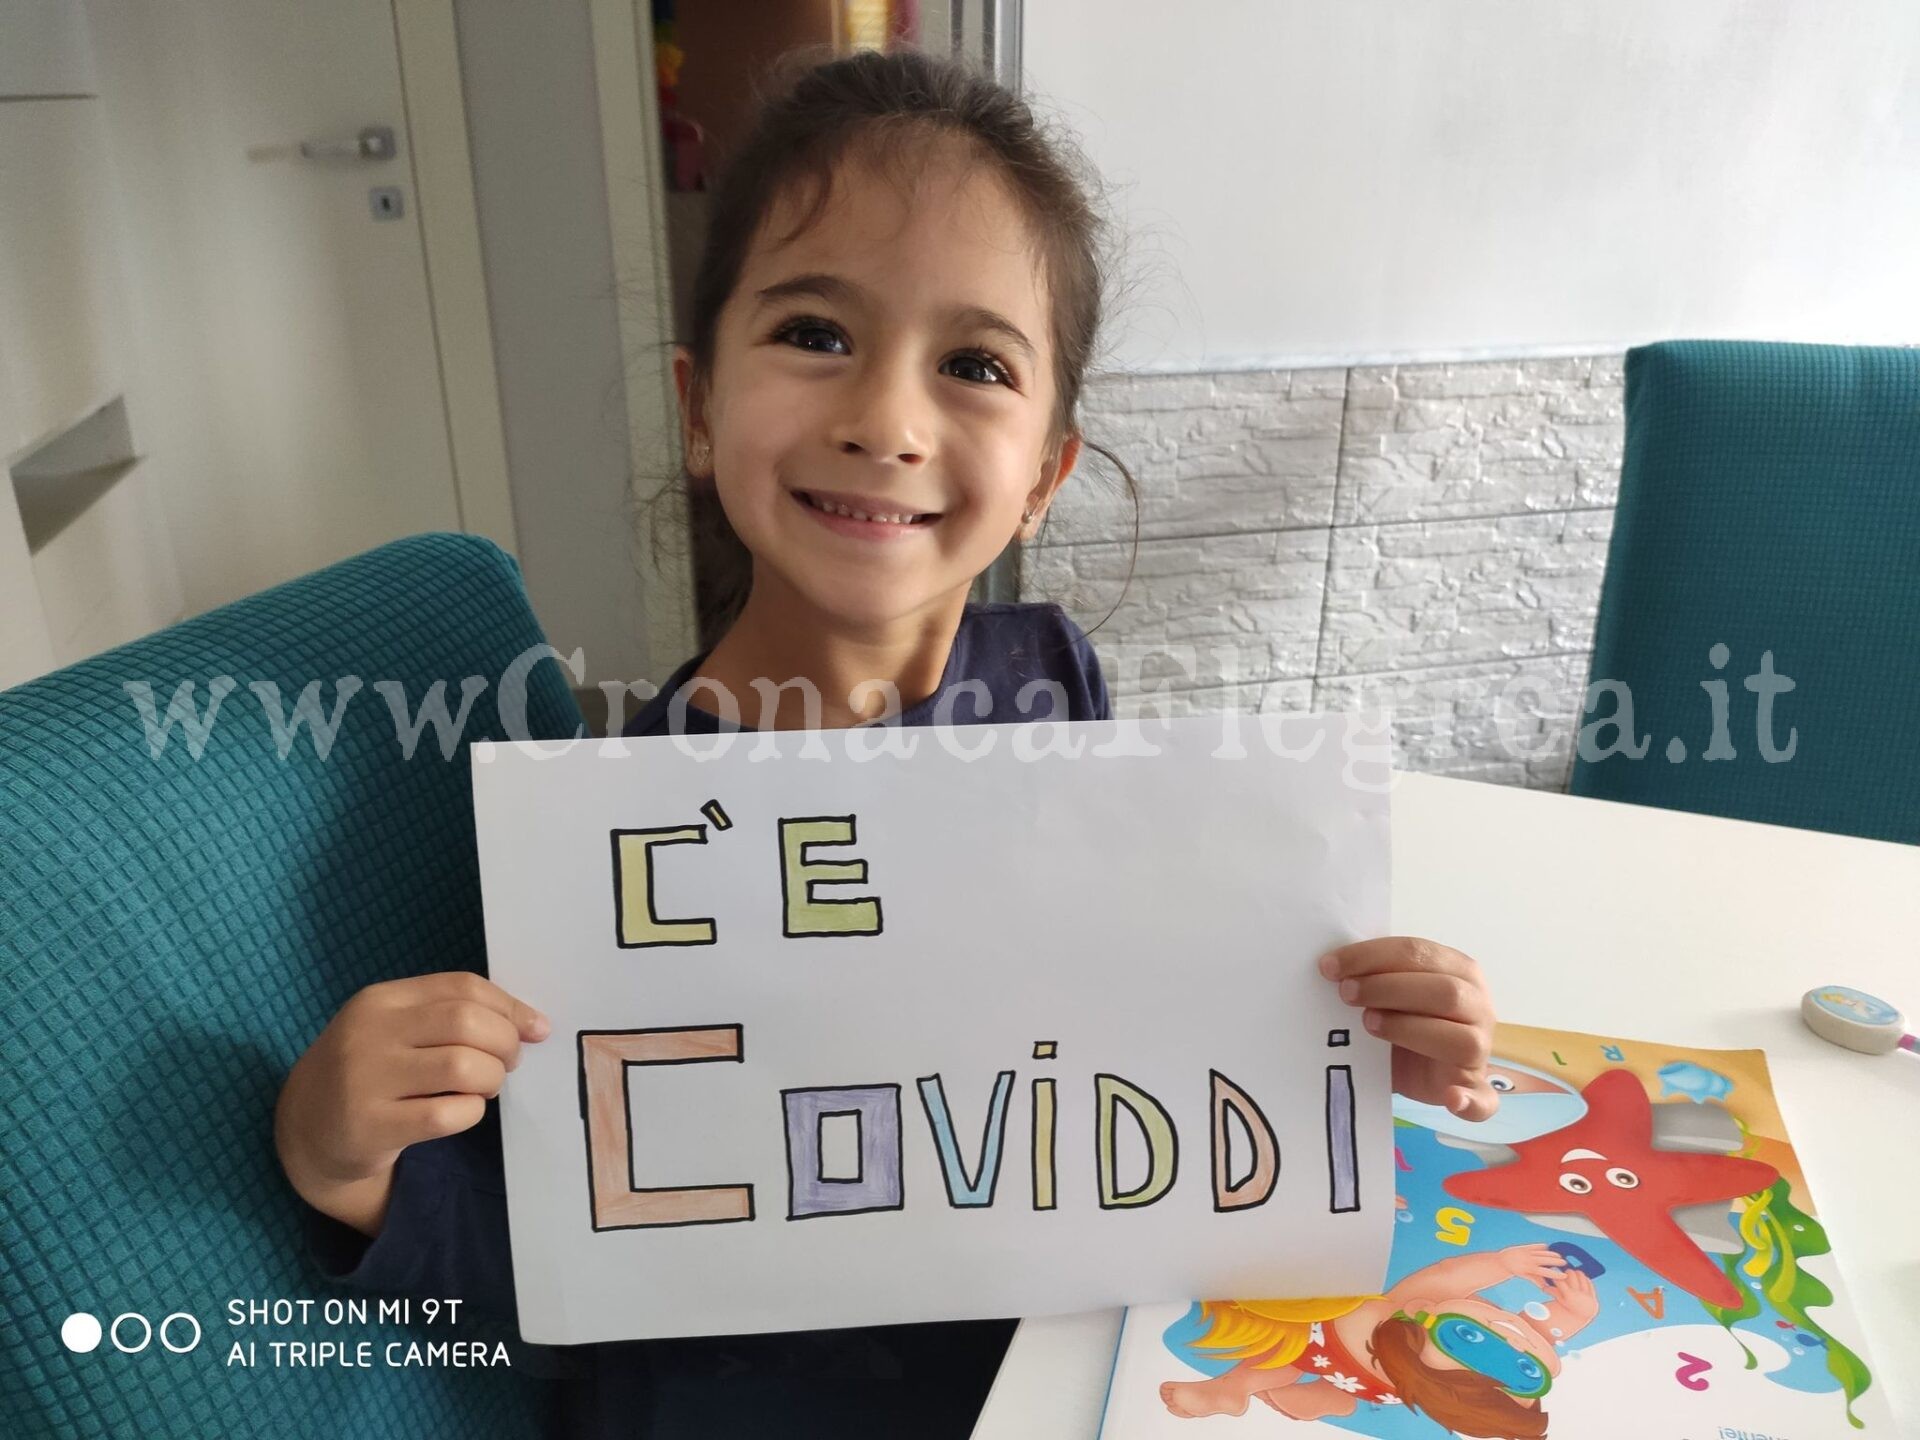 POZZUOLI/ Il messaggio della piccola Ludovica contagiata a scuola: «C’è coviddi»